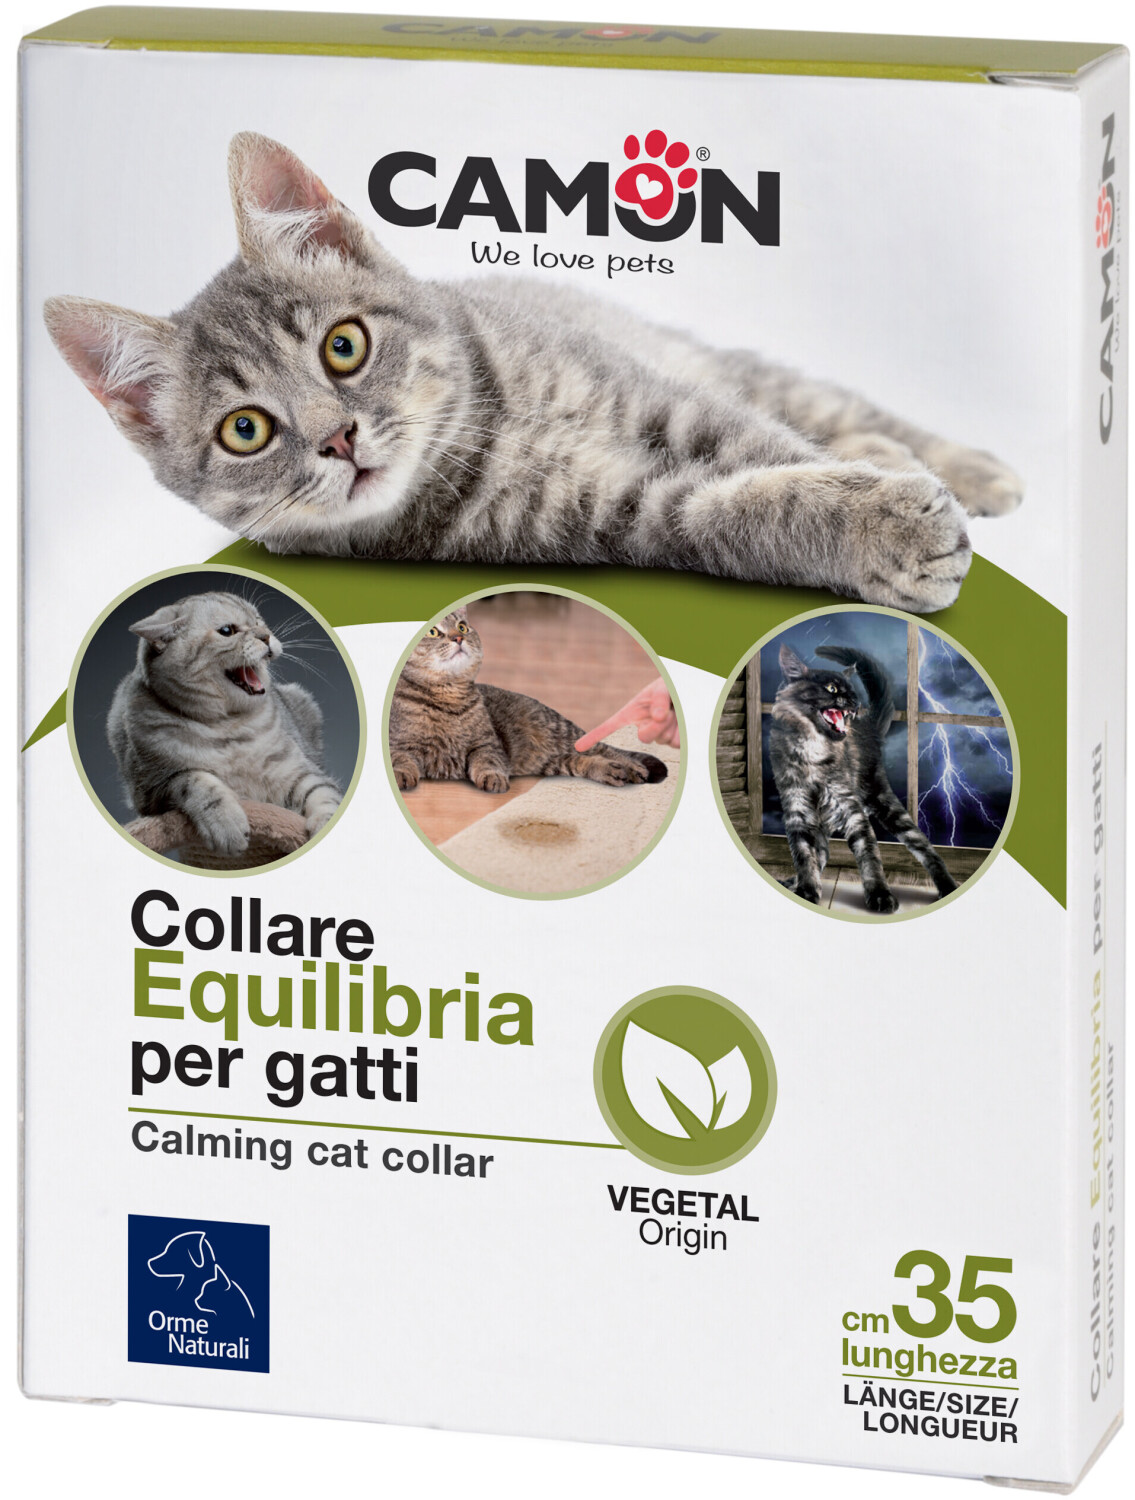 Camon Collare Equilibria per Gatti a € 15,99 (oggi)